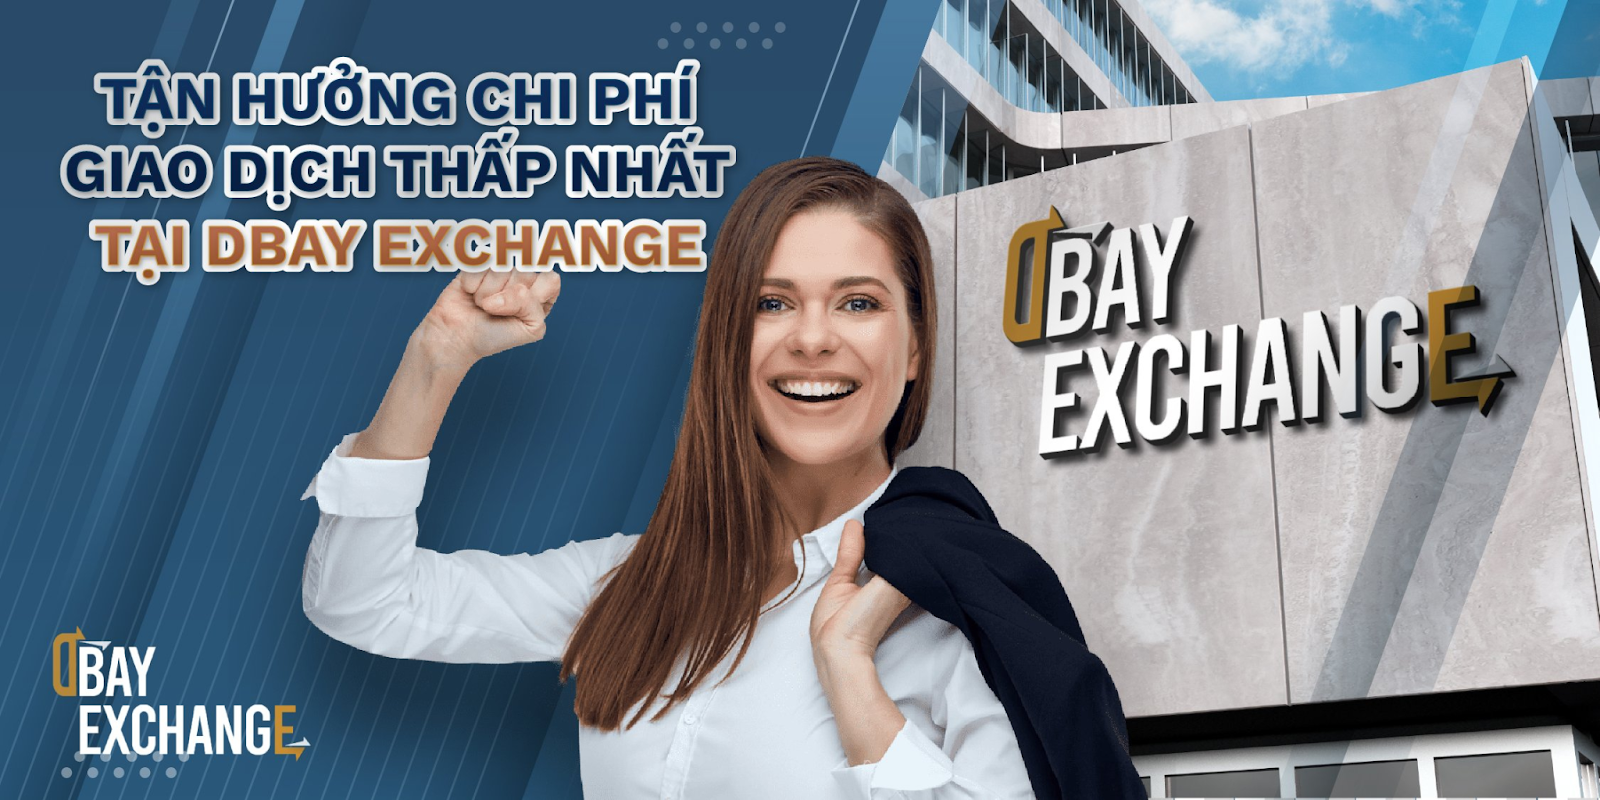 Chi phí giao dịch tại sàn Dbay Exchange